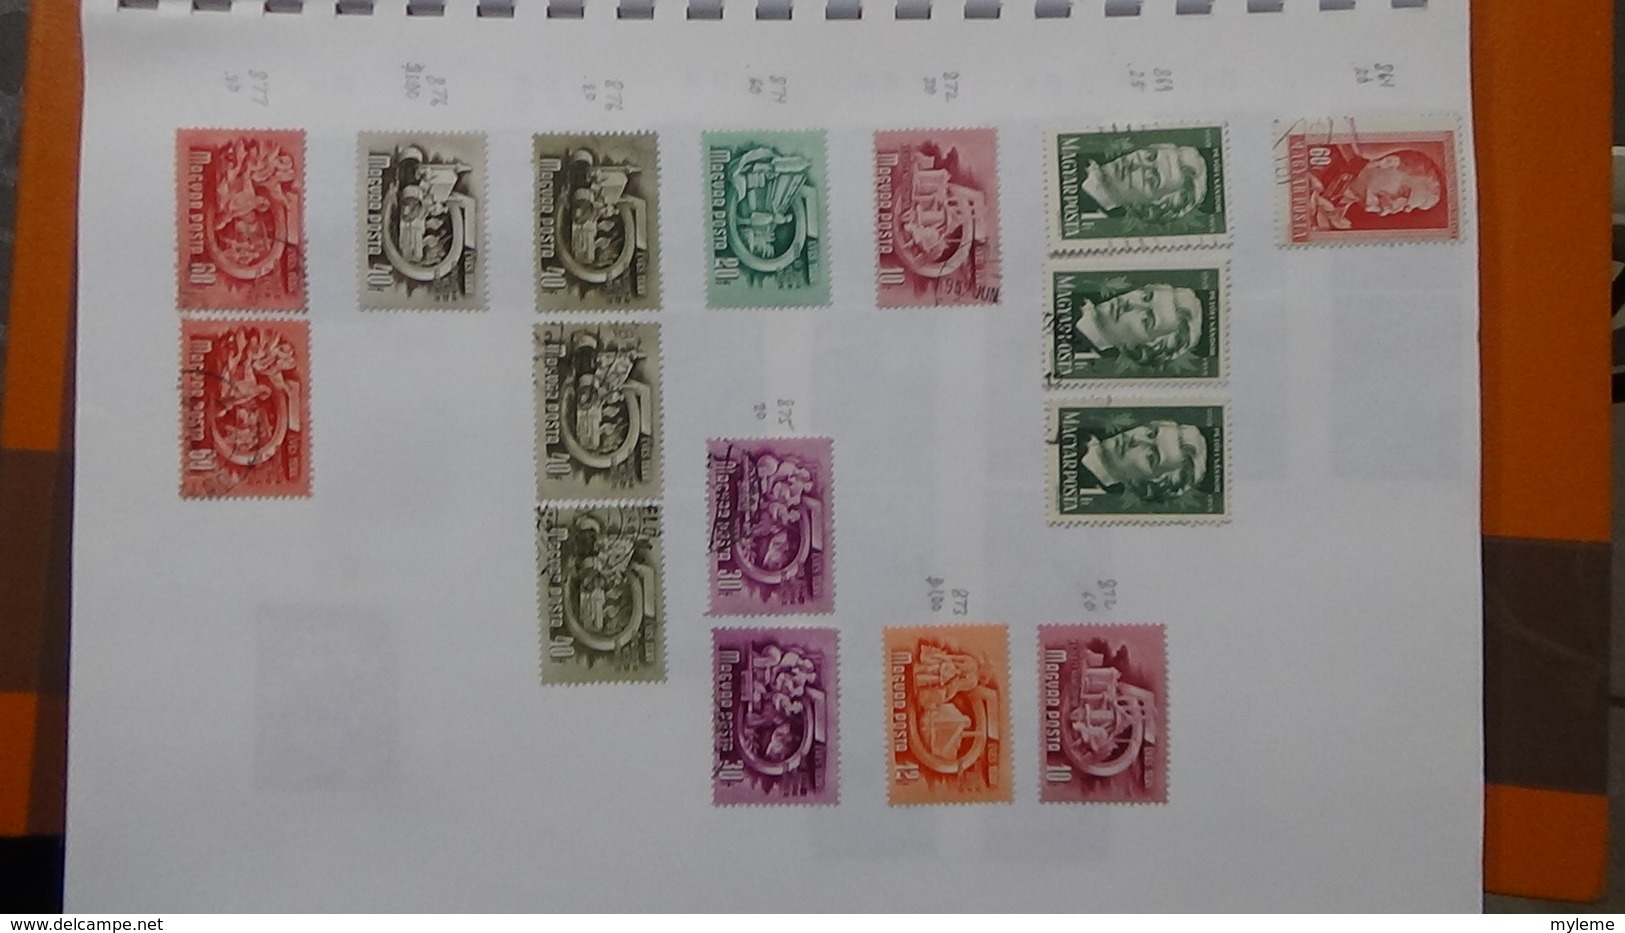 A239 Cahier de timbres de Hongrie dont fin de catalogue. A saisir !!! Voir commentaires